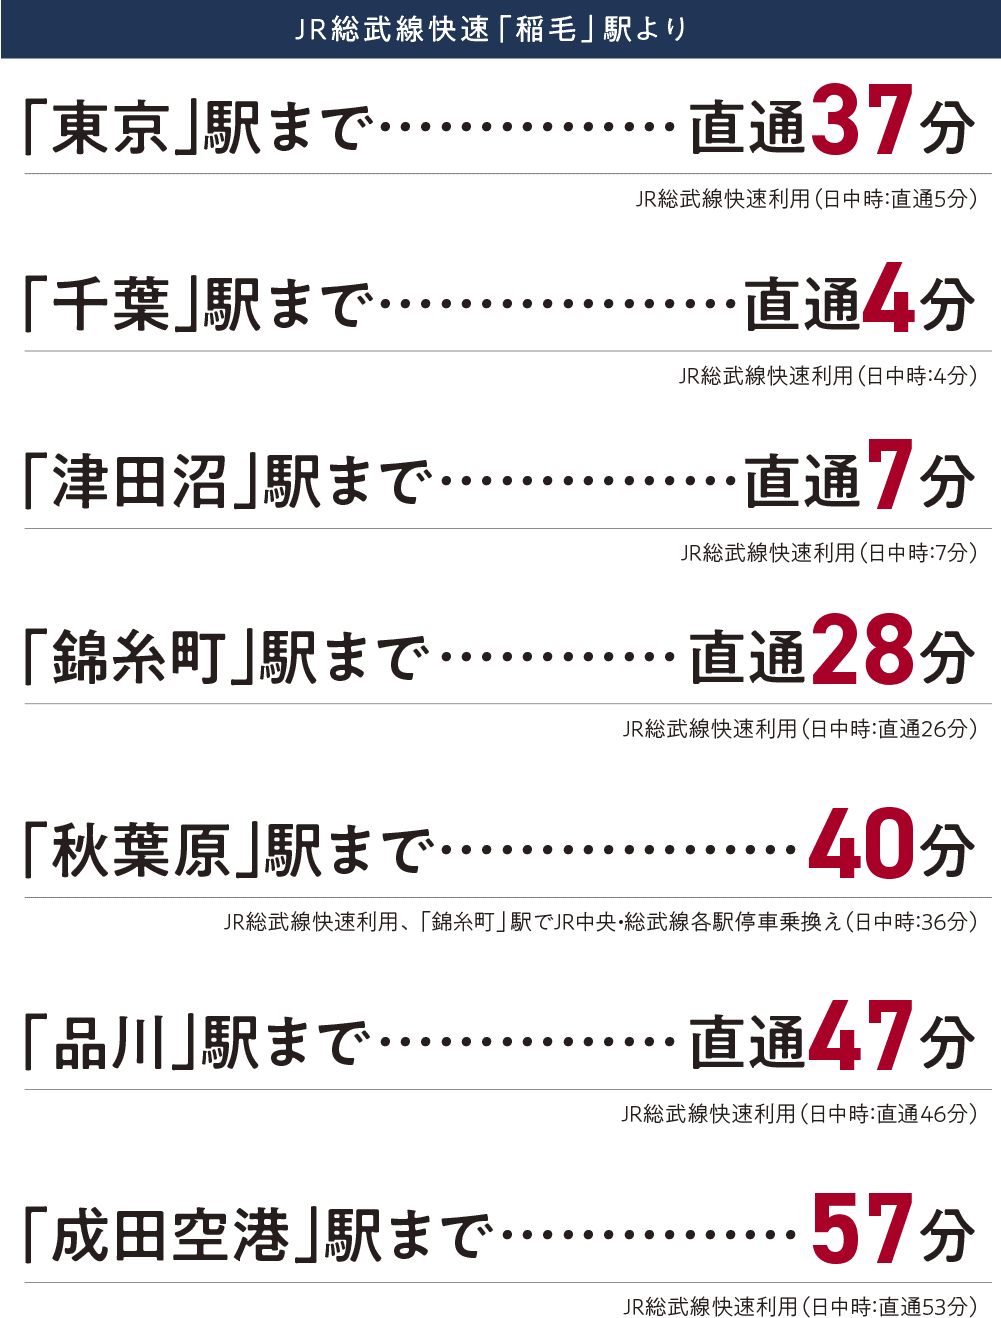 JR総武線快速「稲毛」駅から各駅までの所有時間 図